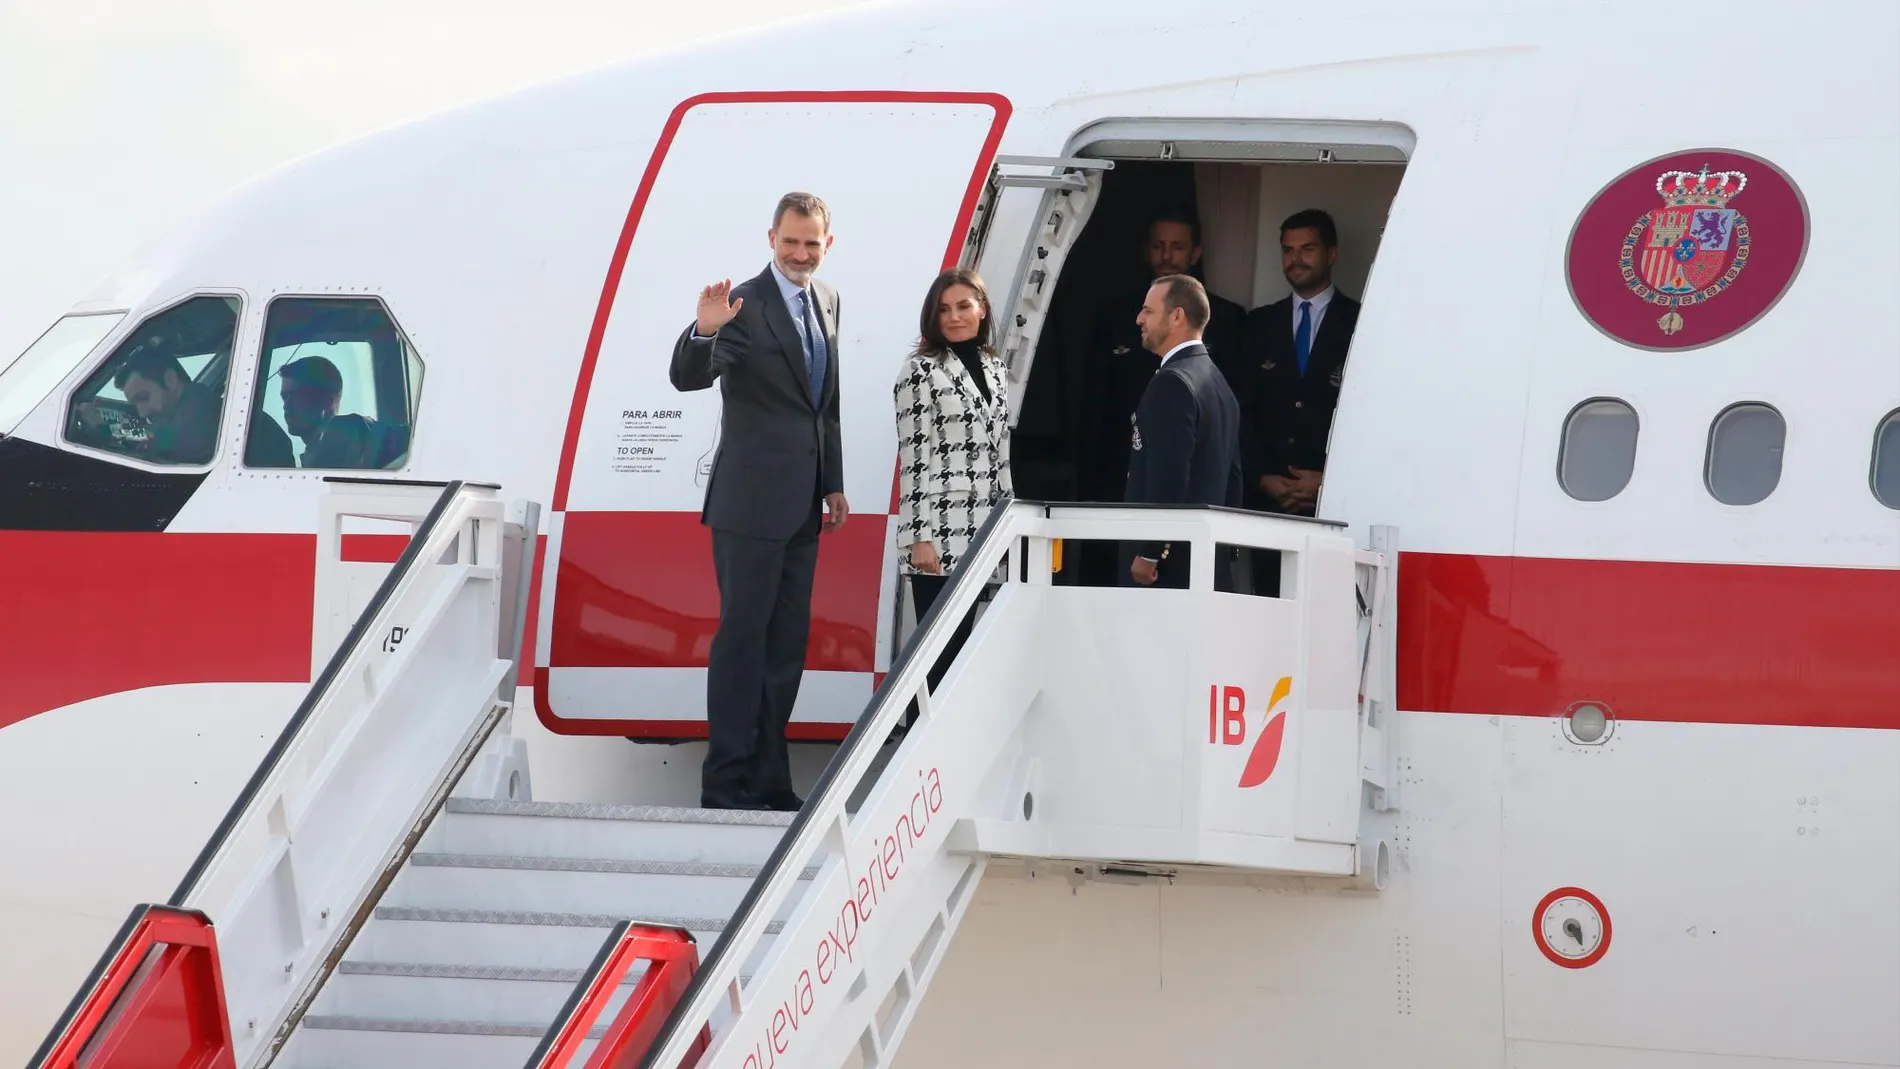 Los Reyes de España, don Felipe y doña Letizia, ponen rumbo a su viaje oficial a Cuba desde el Aeropuerto Adolfo Suárez Madrid-Barajas/Europa Press